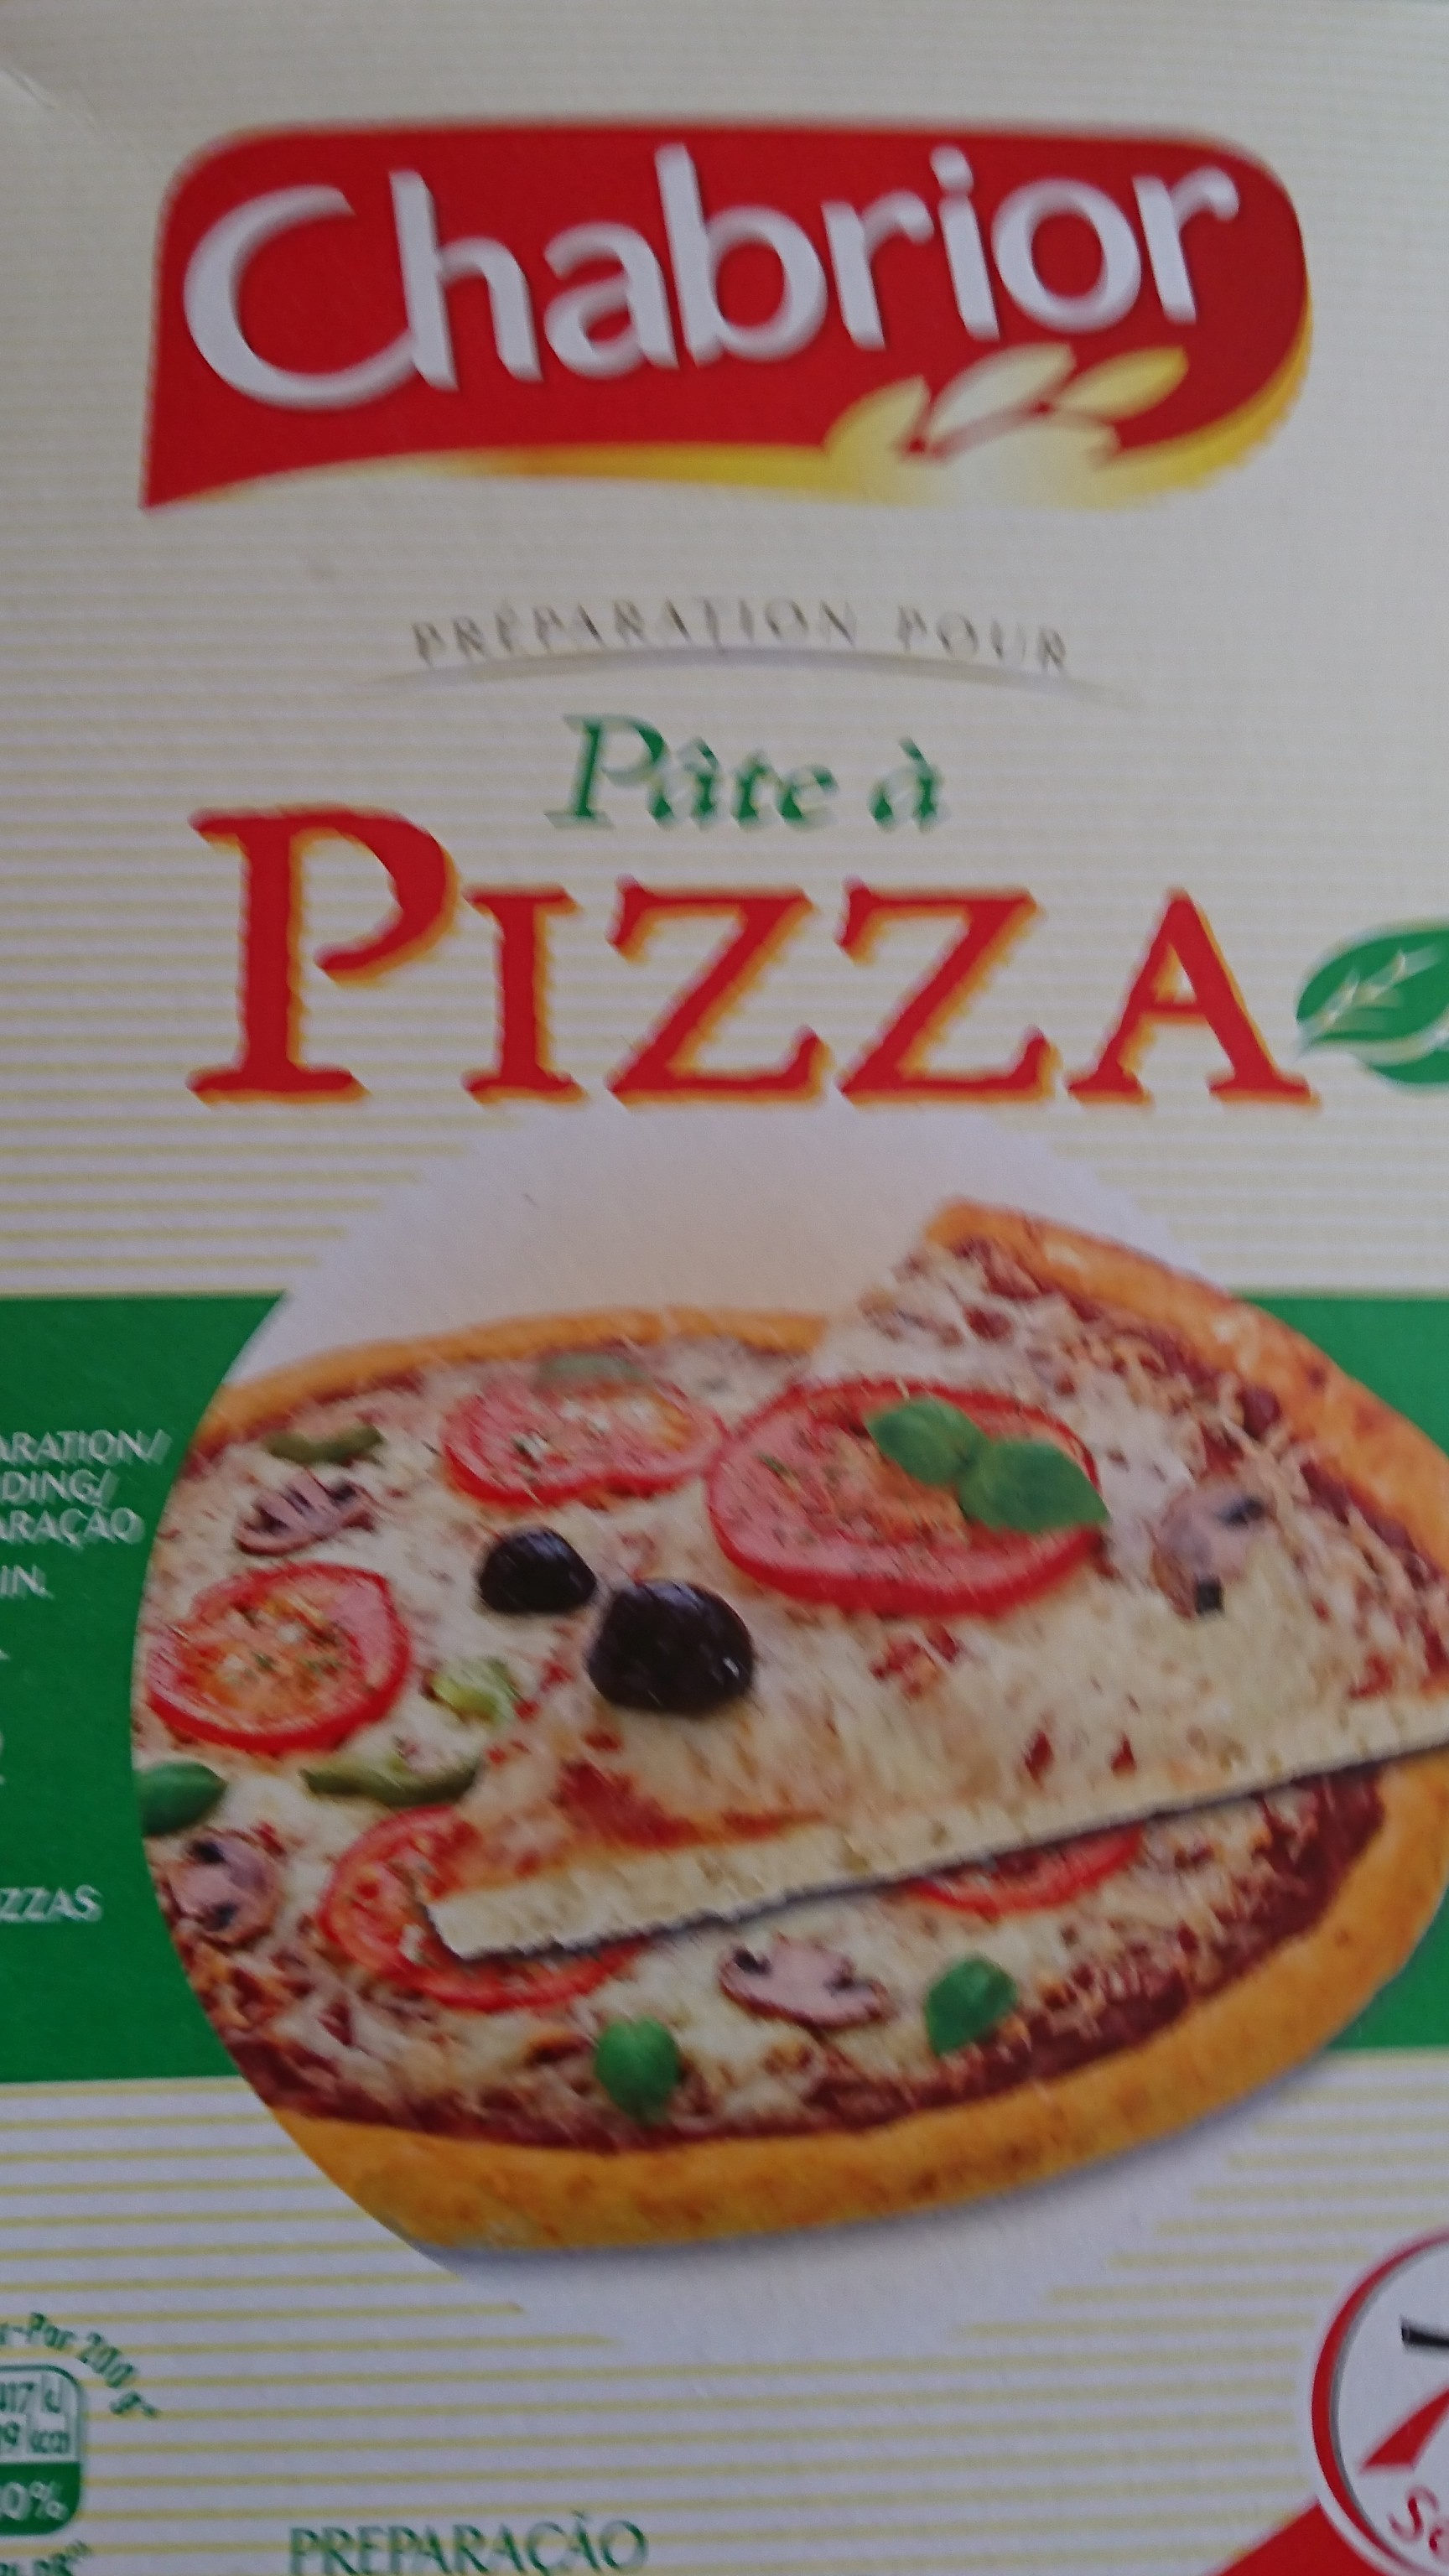 Préparation pour pâte à pizza - Produkt - fr